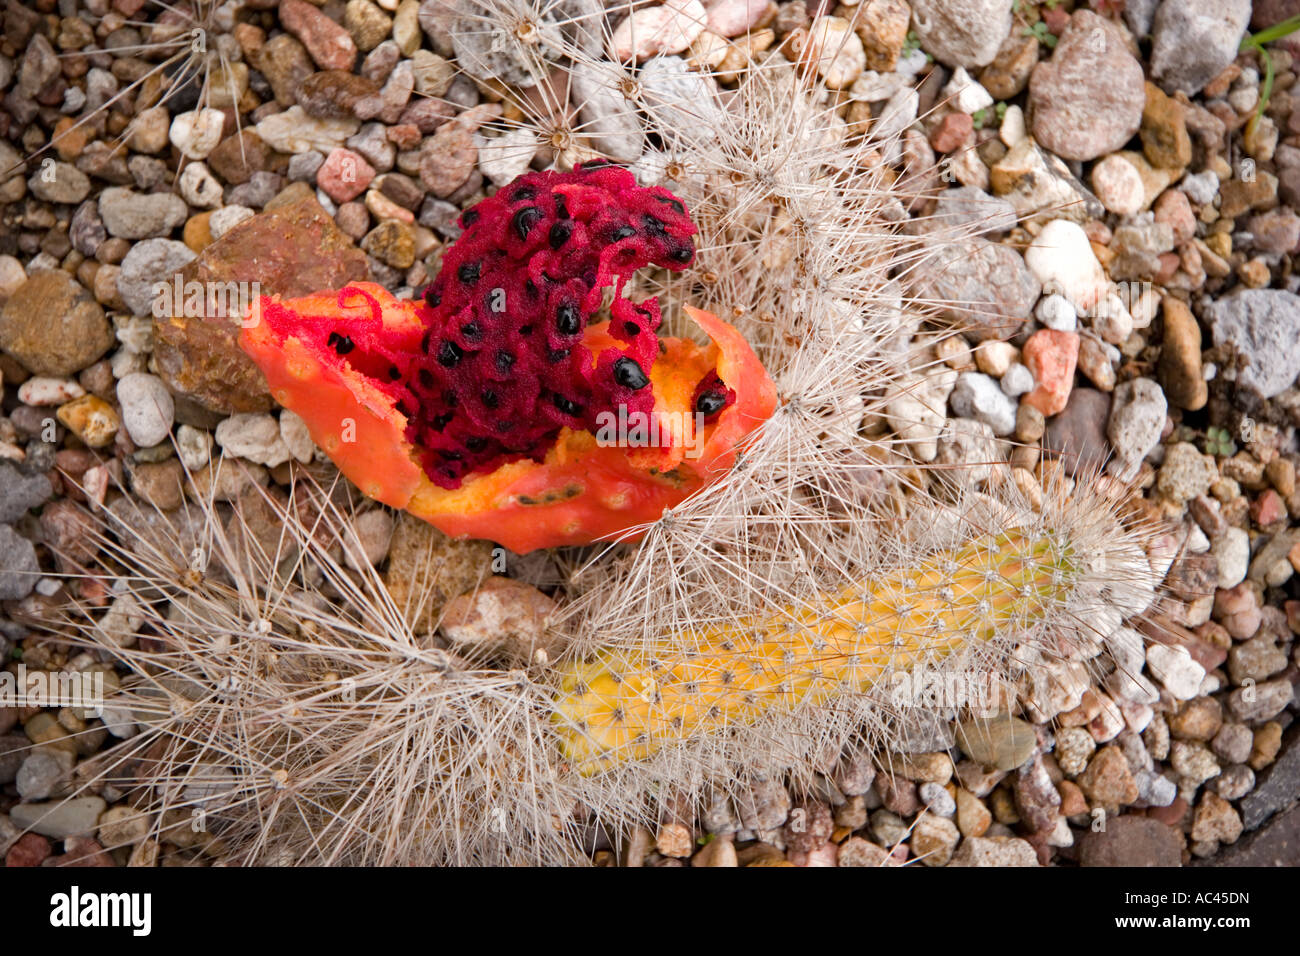 A Peniocereus serpentinus fruit (Mexico). Fruit du cactus Peniocereus serpentinus (Mexique). Stock Photo